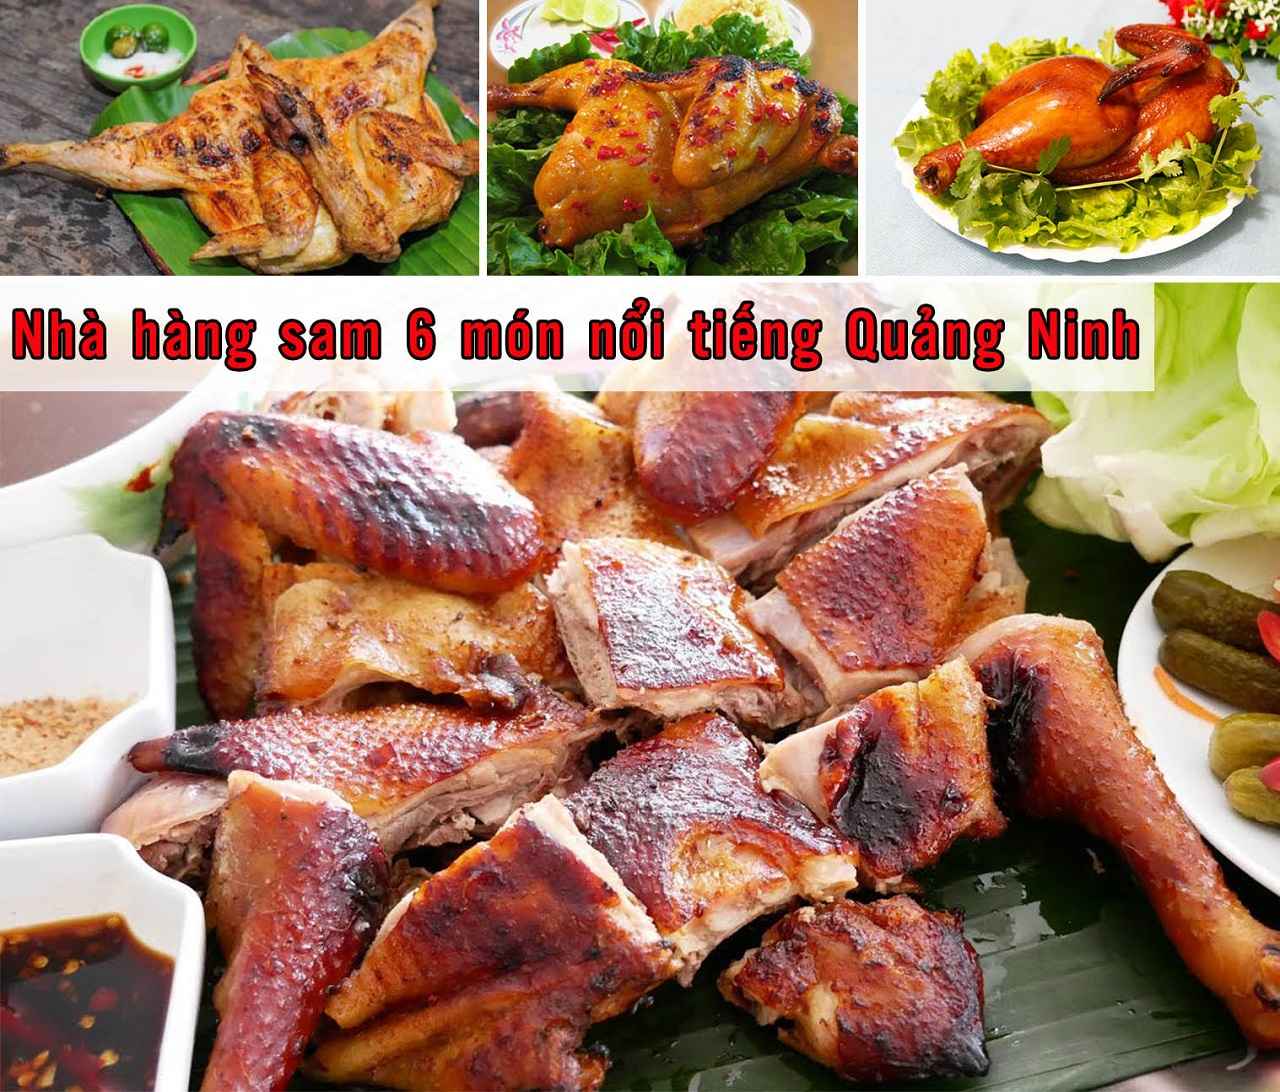 Nhà hàng sam 6 món nổi tiếng Quảng Ninh